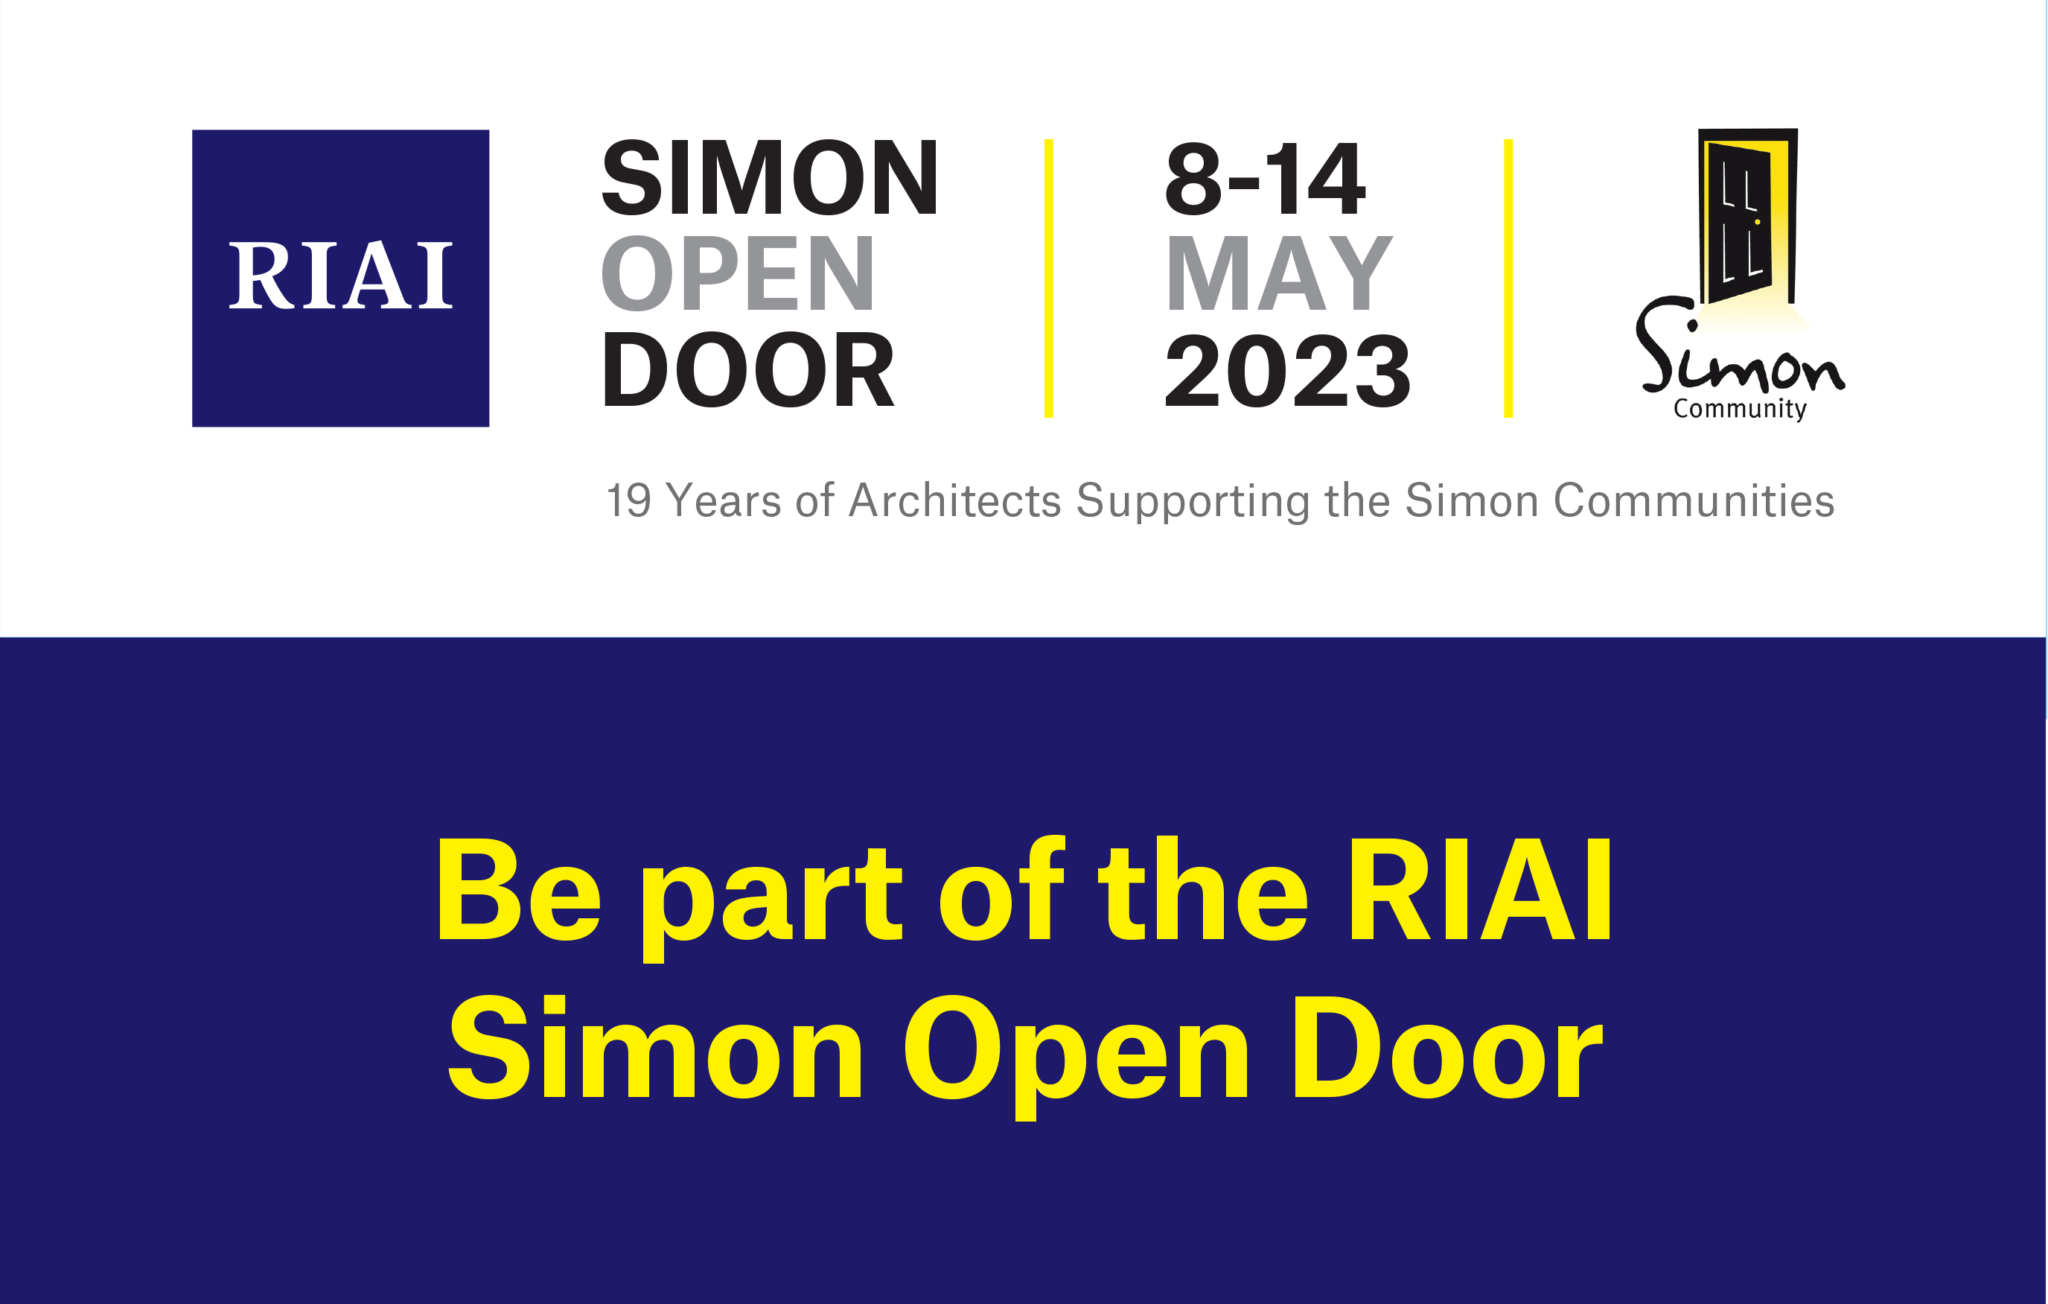 RIAI Simon Open Door 8-14 May